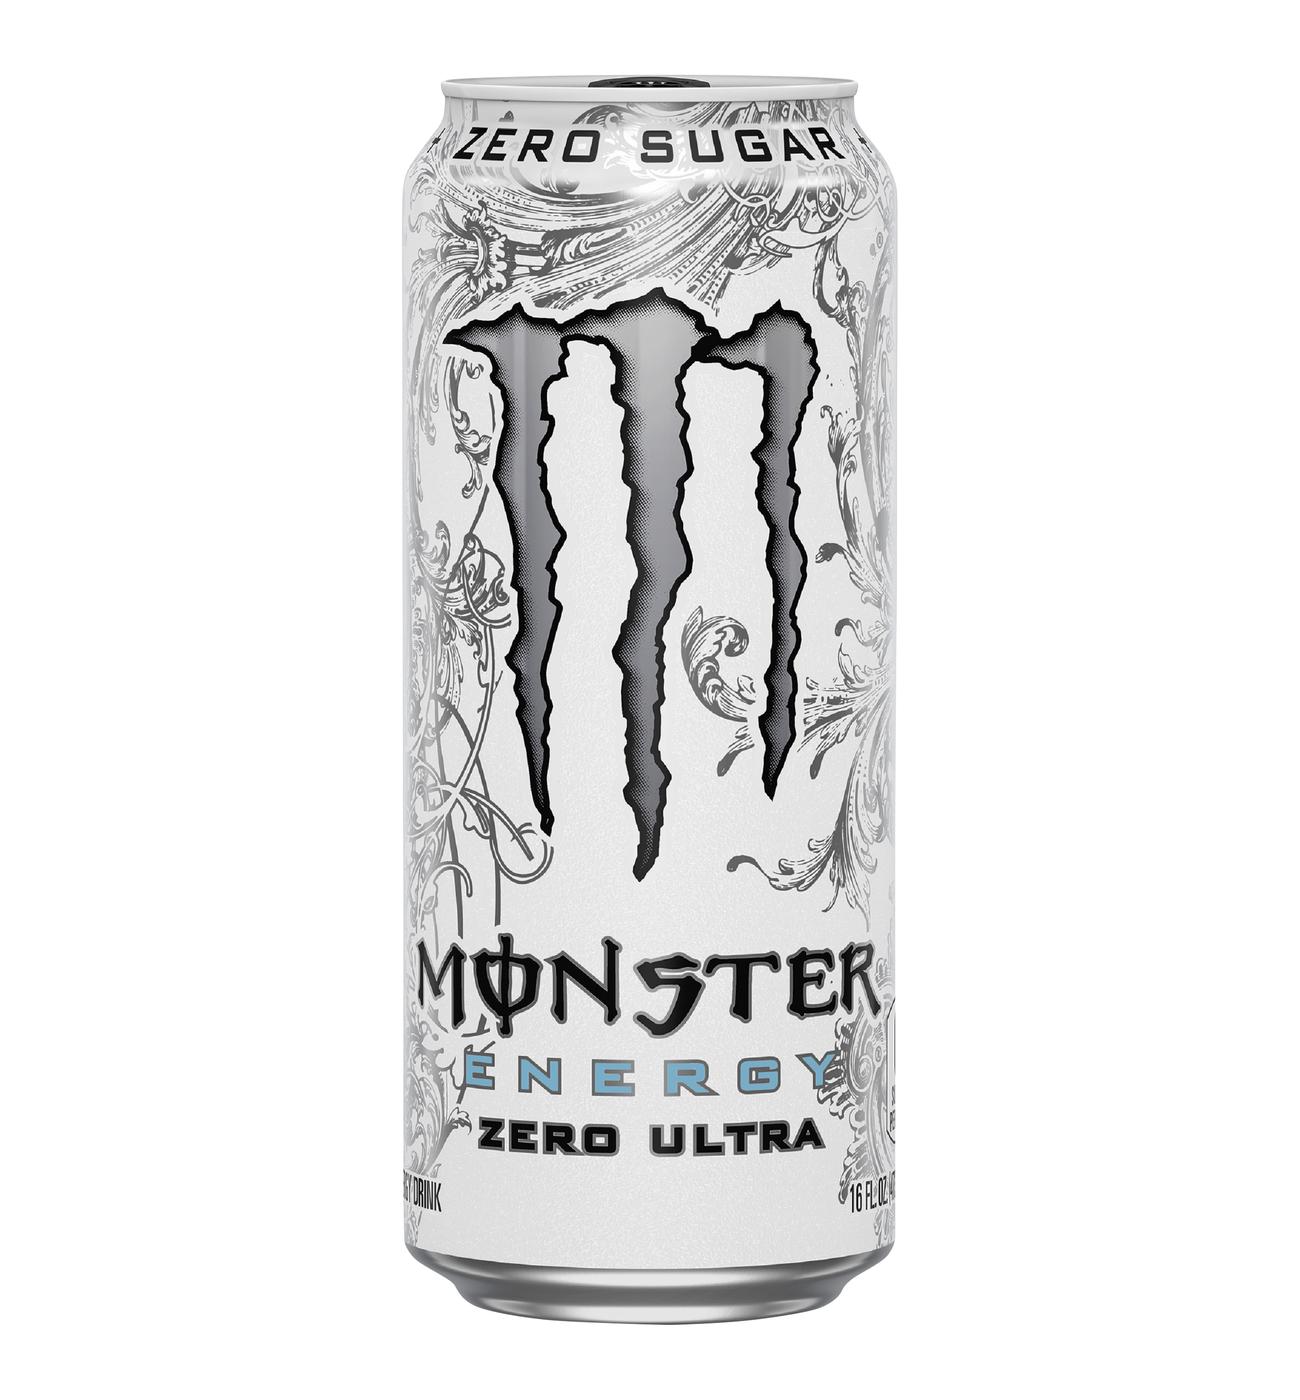 Ultra Red  Monster Ultra Zero-Sugar Energy Drinks